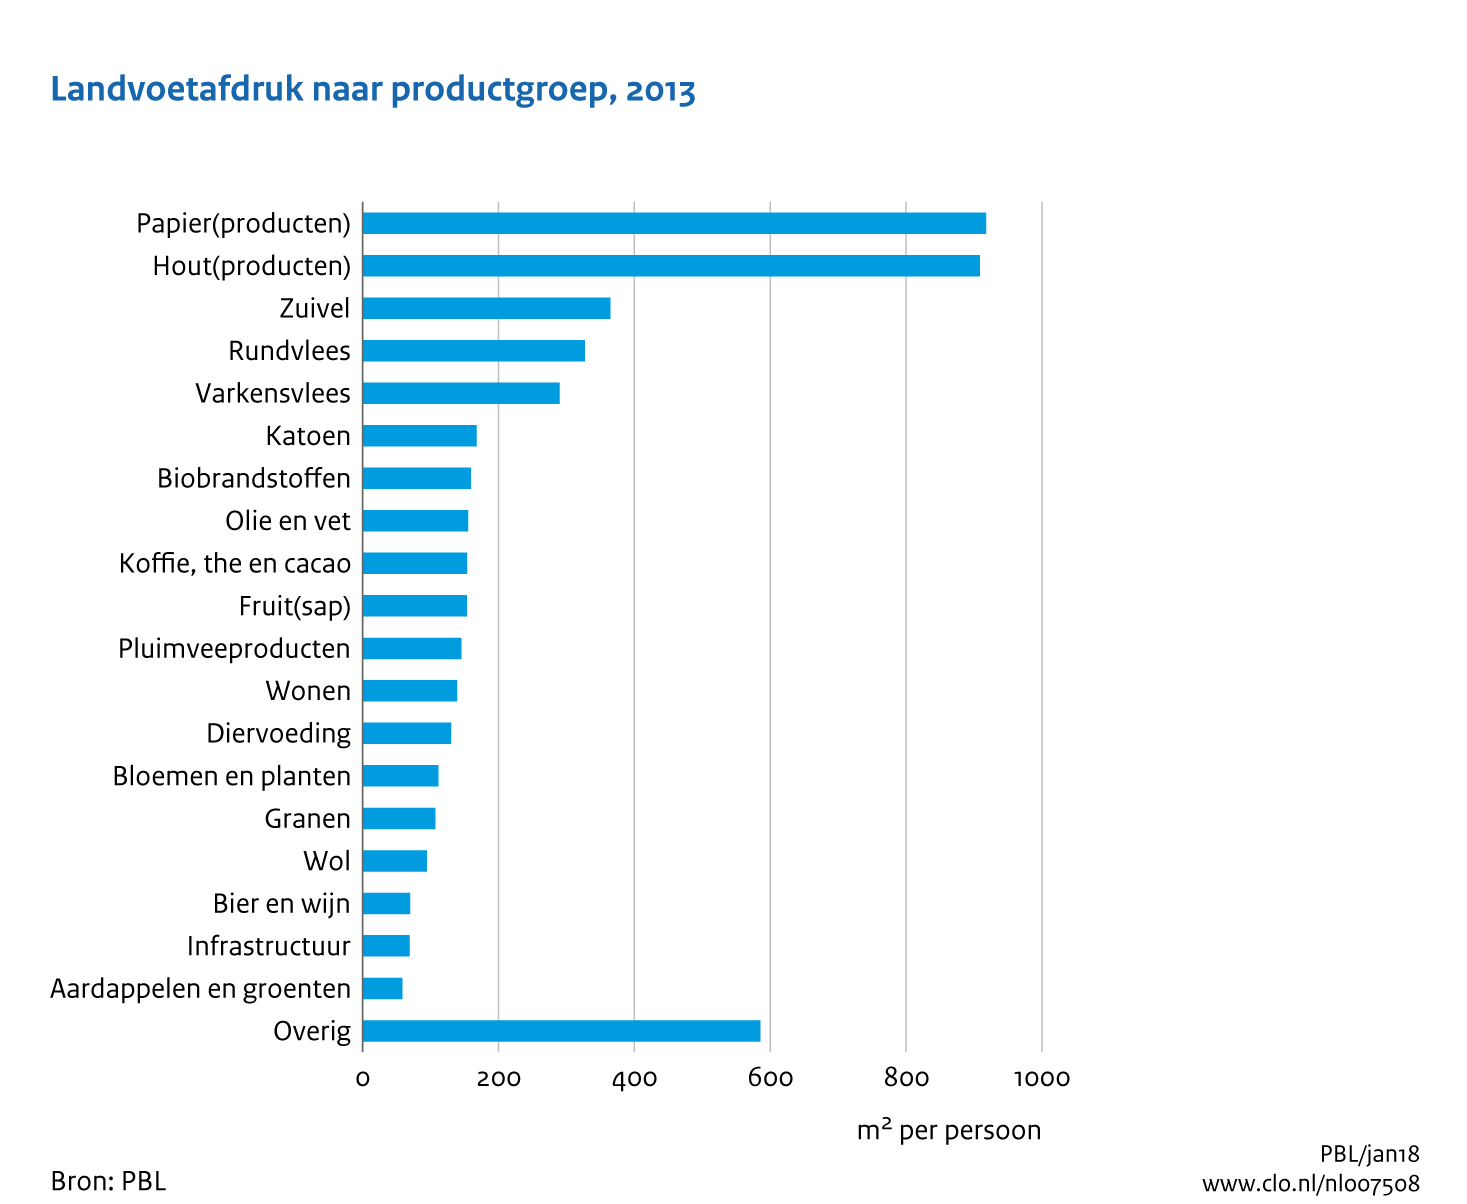 Figuur Landgebruik per persoon door Nederlandse consumptie naar productgroep. In de rest van de tekst wordt deze figuur uitgebreider uitgelegd.